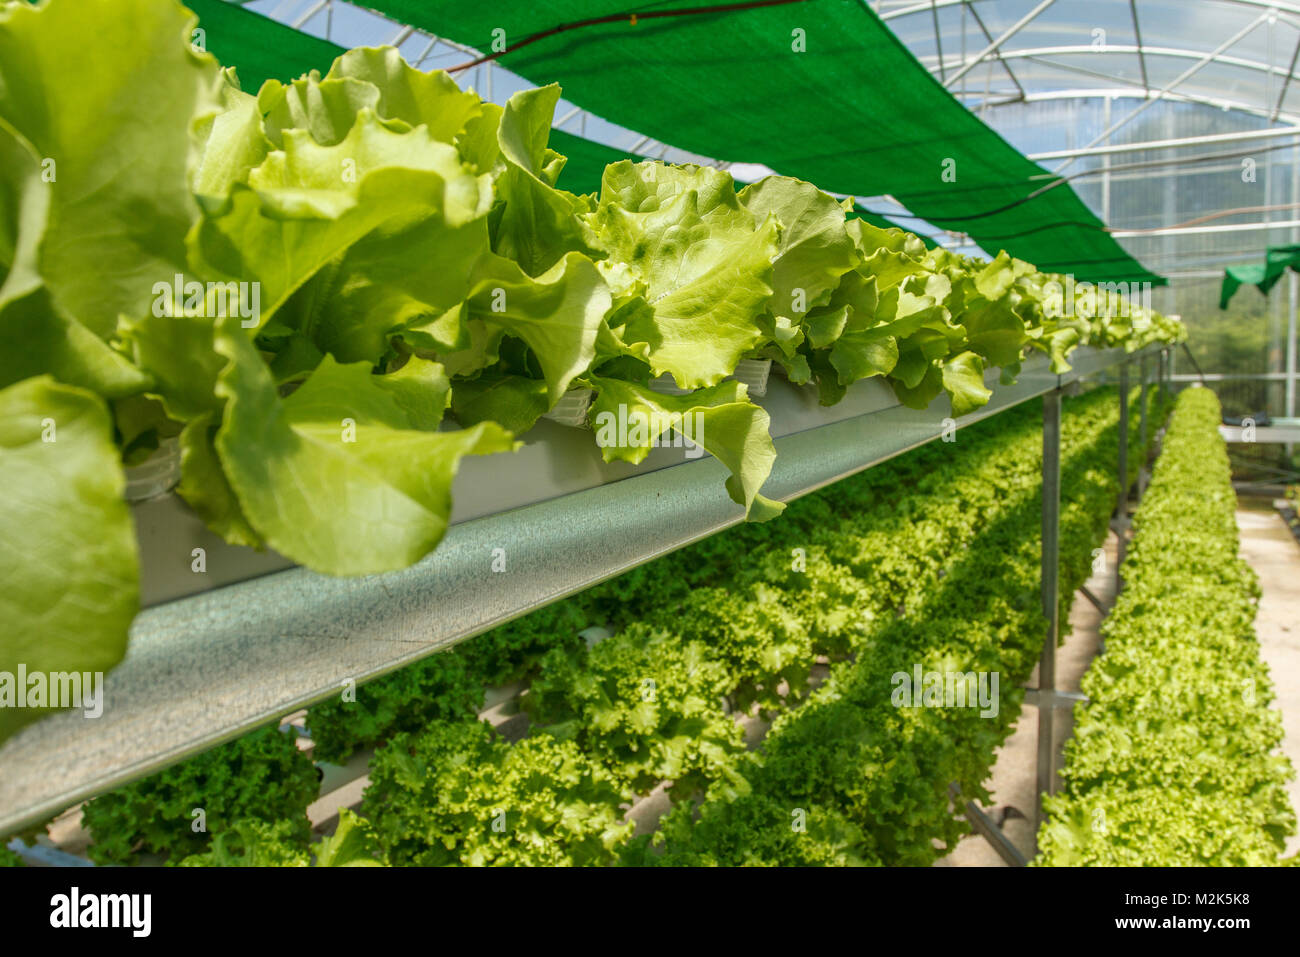 greenhouse Stock Photo